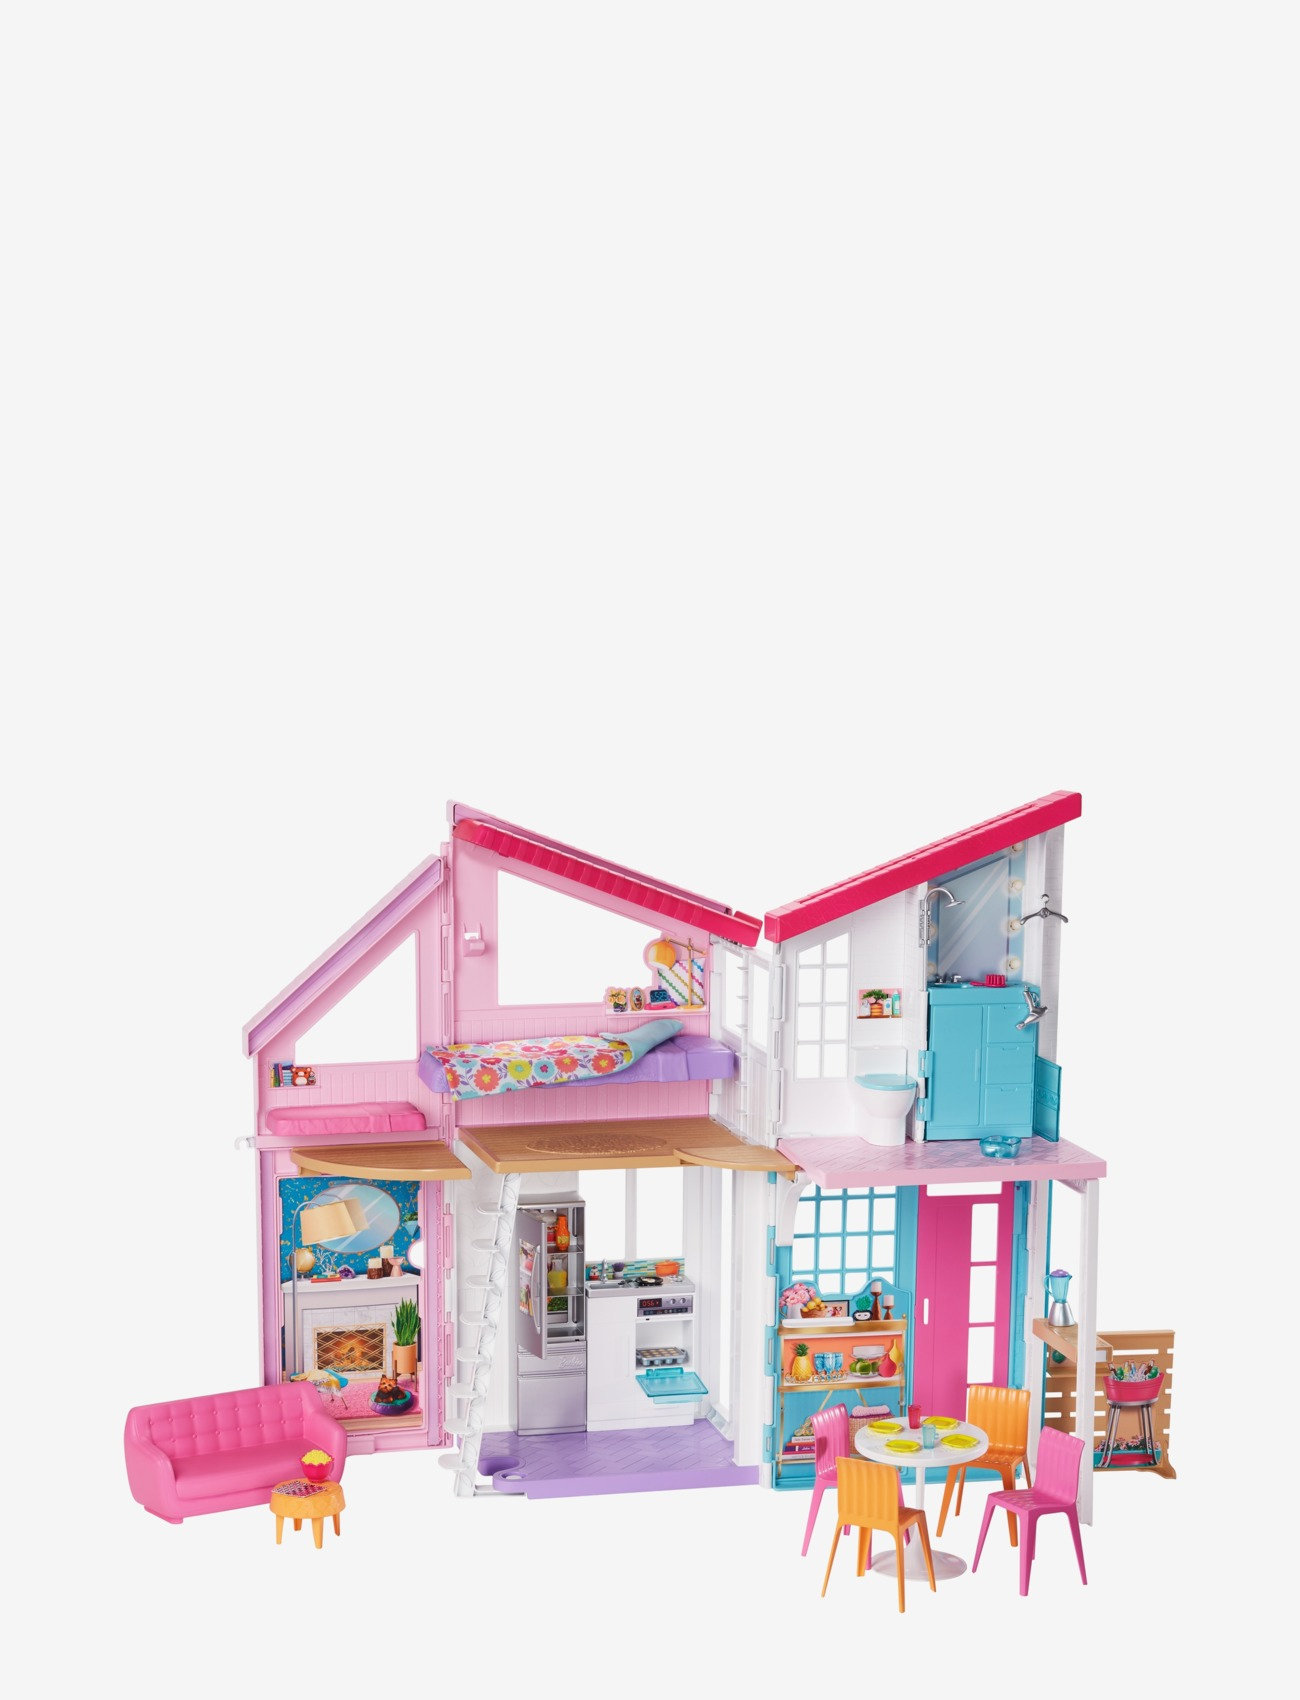 Barbie - Malibu House Playset - dukkehus - multi color - 0